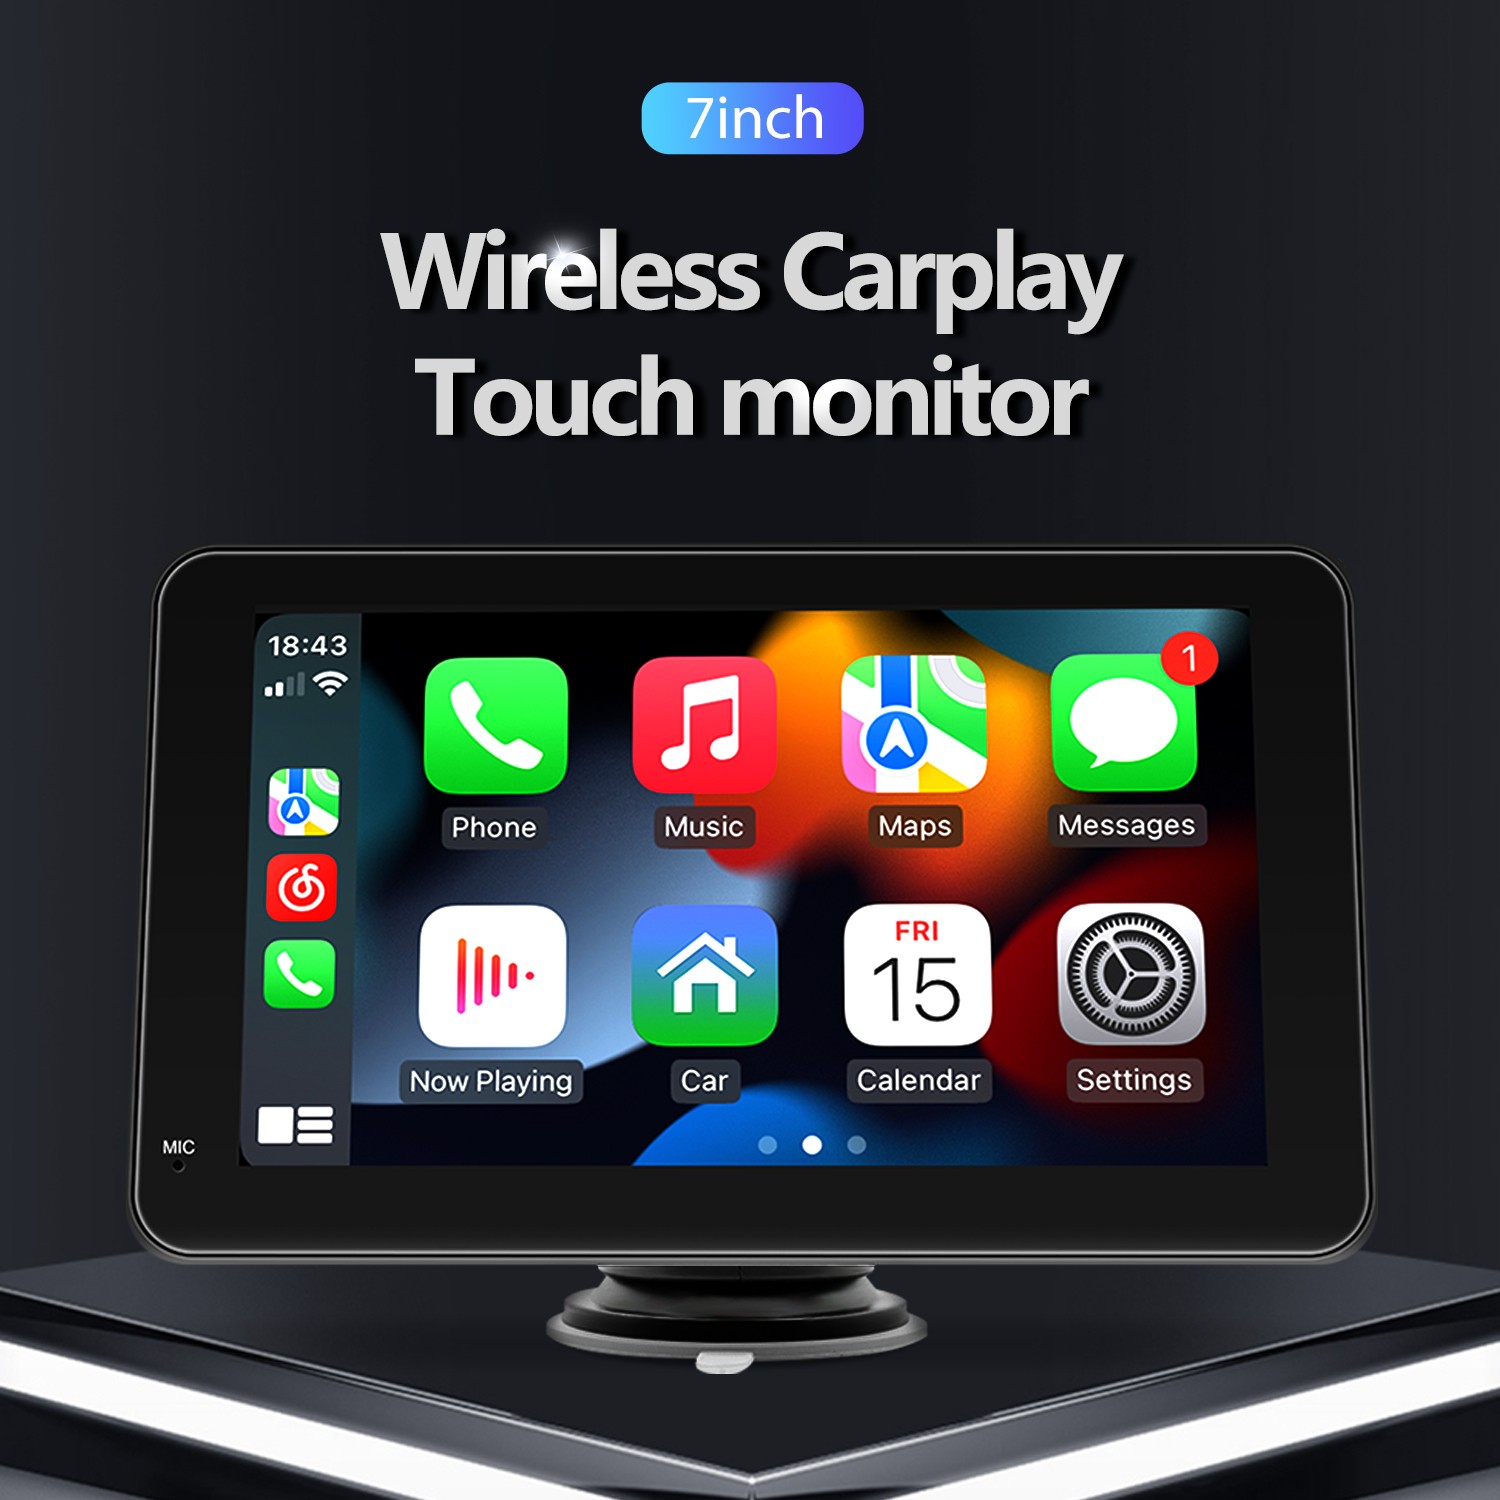 Autoradio full tactile GPS Bluetooth Android & Apple Carplay